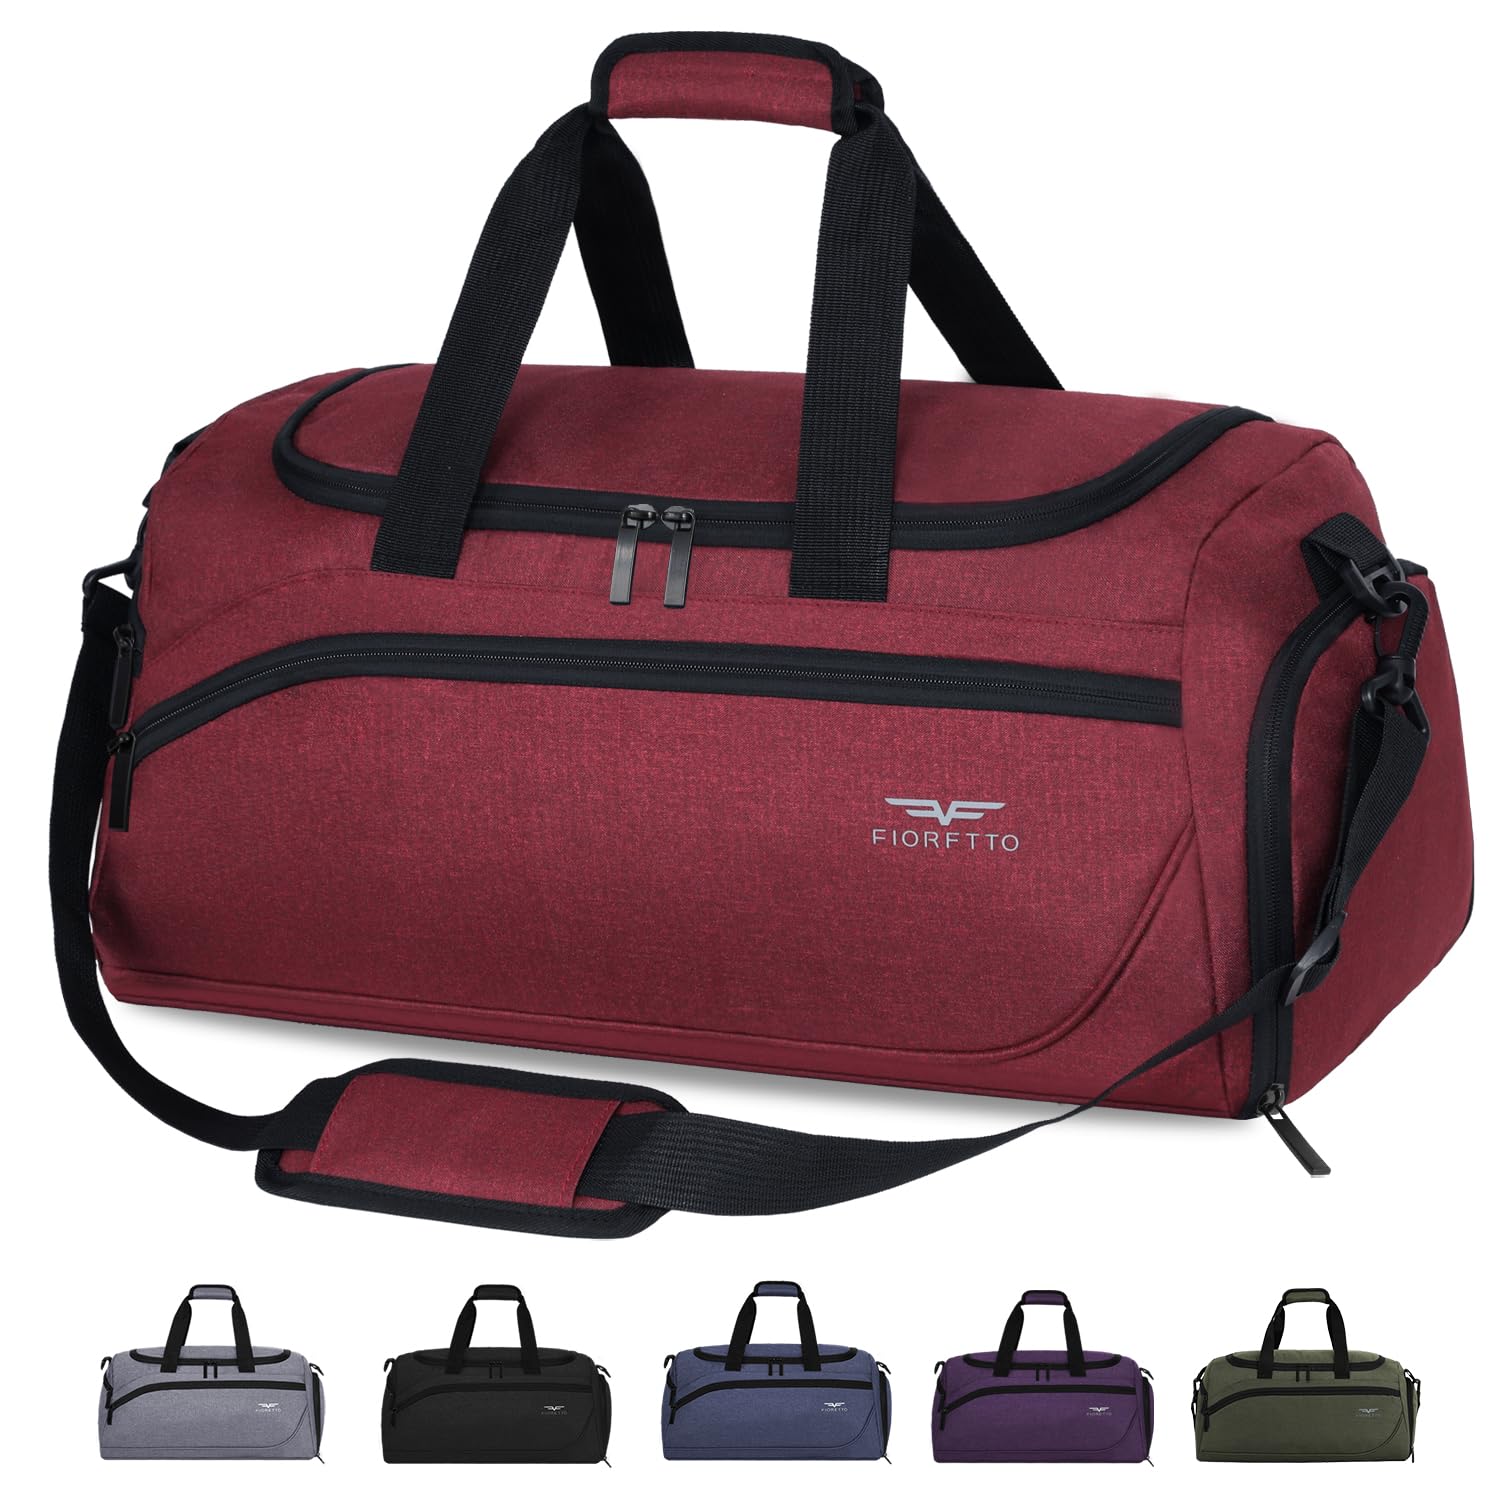 GSGボストンバッグ 旅行 大容量 スポーツバッグ シューズバッグ ジムバック カバン メンズ トラベルバッグ レディース 修学旅行 バッグ